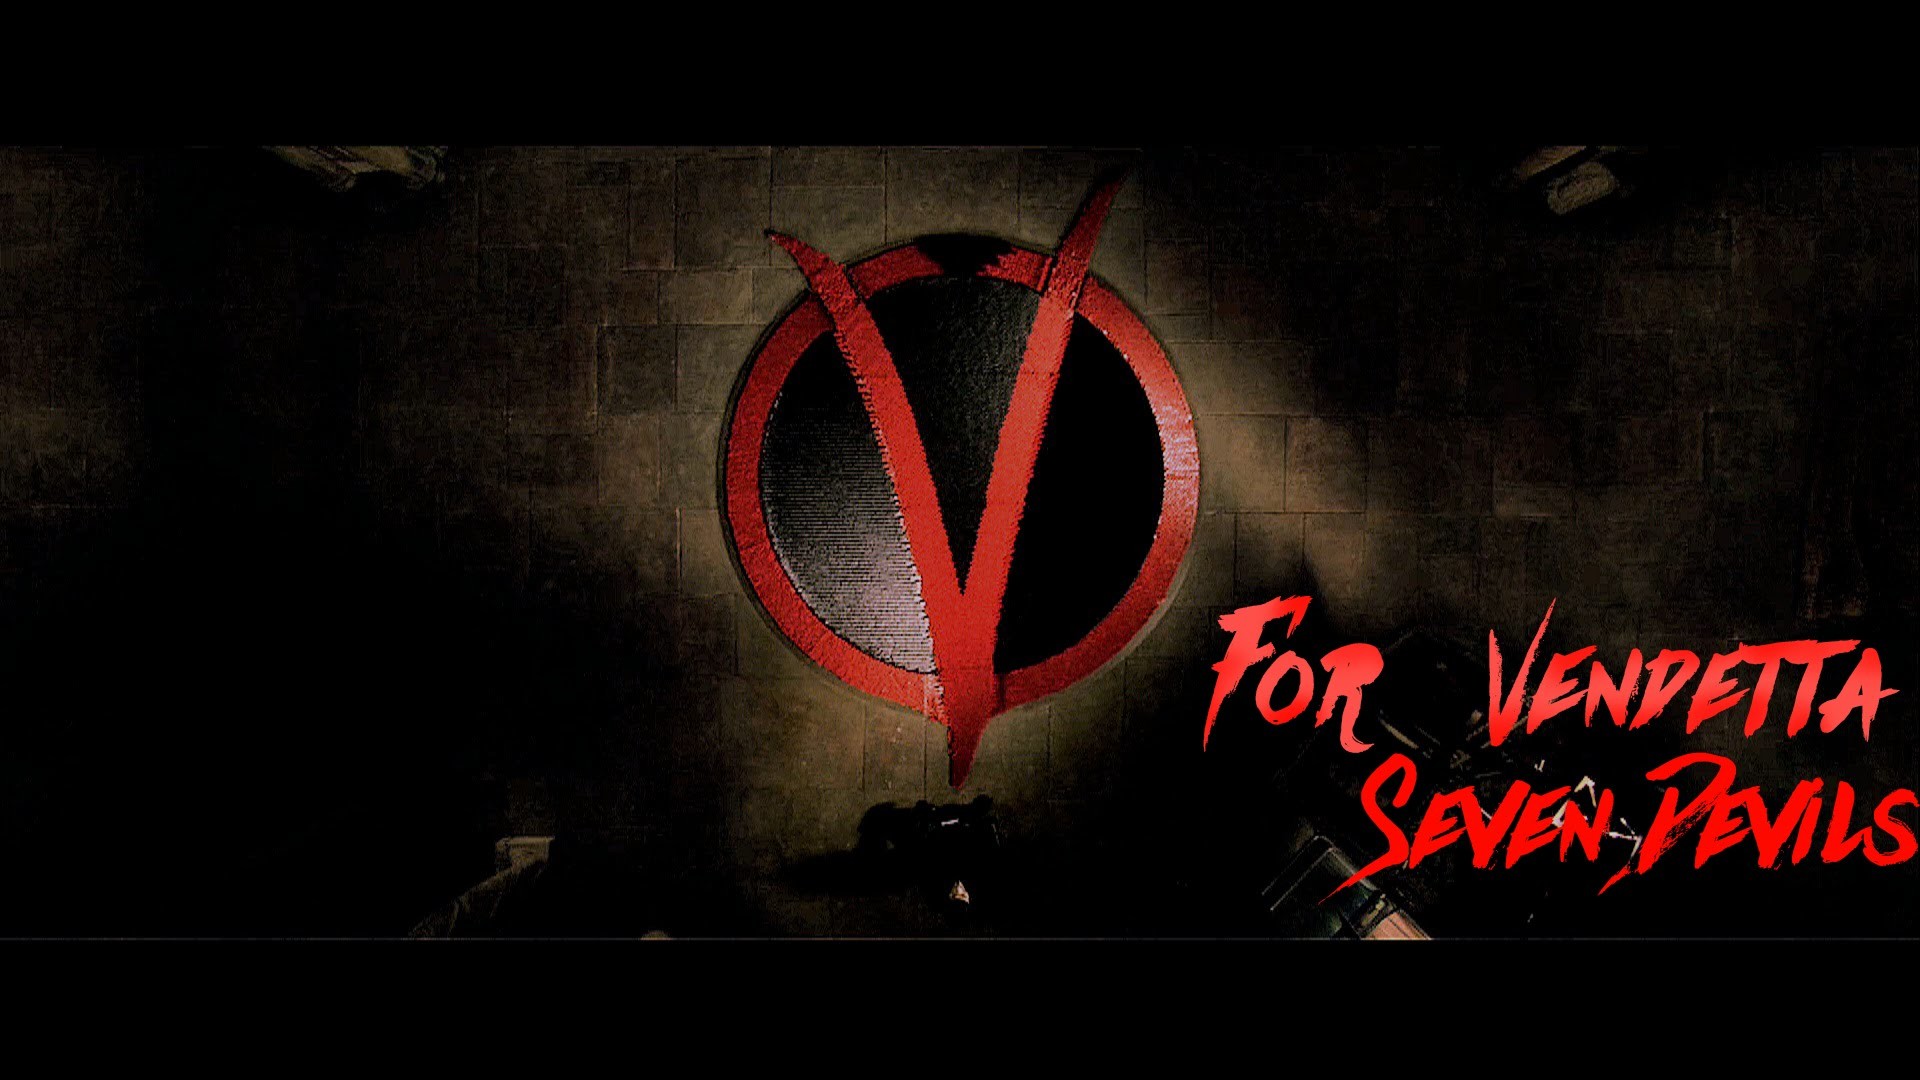 1920x1080 V for Vendetta - Seven devils